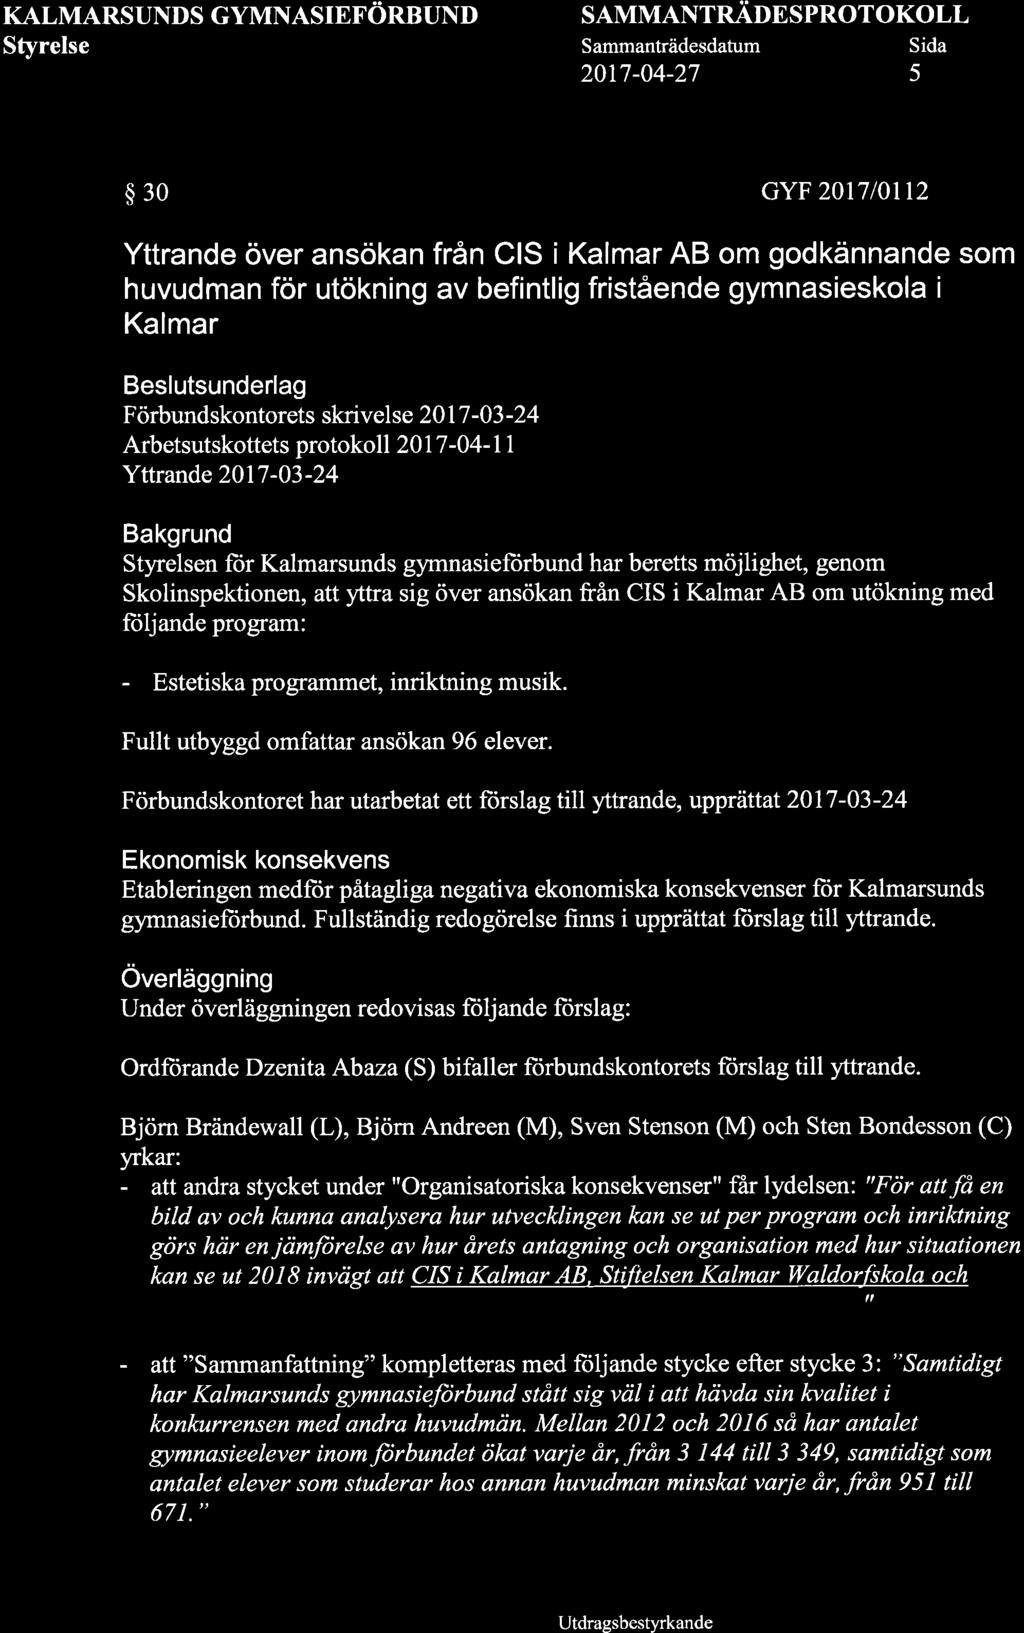 KALMARSUNDS GYMNASIEFöRBUND SAMMANTRADESPROTOKOLL 2017-04-27 5 $30 GYF 2017l0tt2 Yttrande över ansökan från CIS i Kalmar AB om godkännande som huvudman för utökning av befintlig fristående